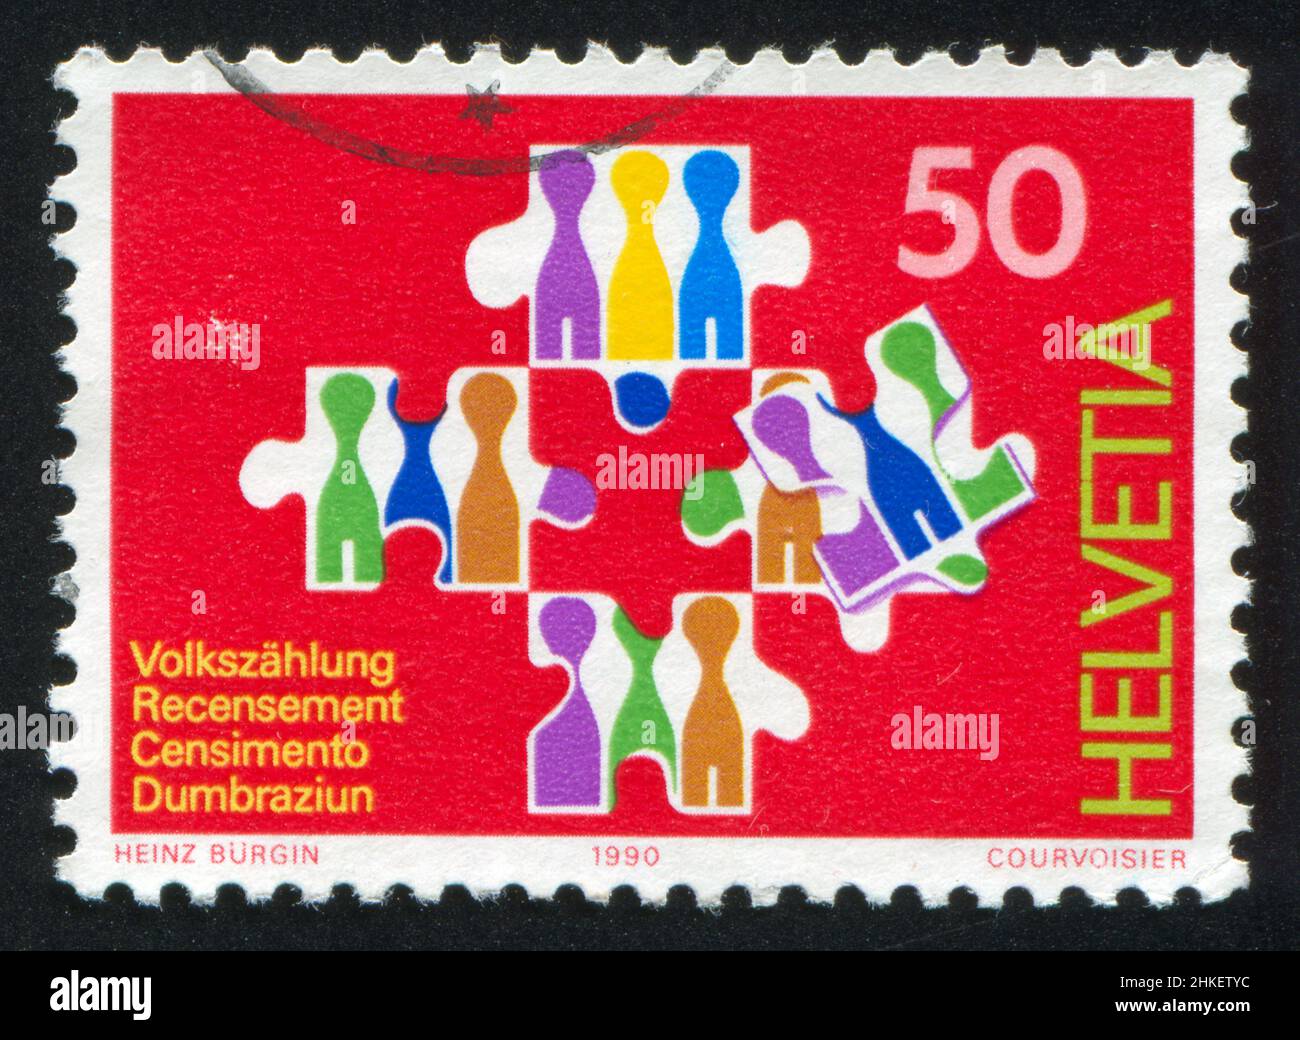 SWITZERLAND - CIRCA 1990: stamp printed by Switzerland, shows National Census, circa 1990 Stock Photo